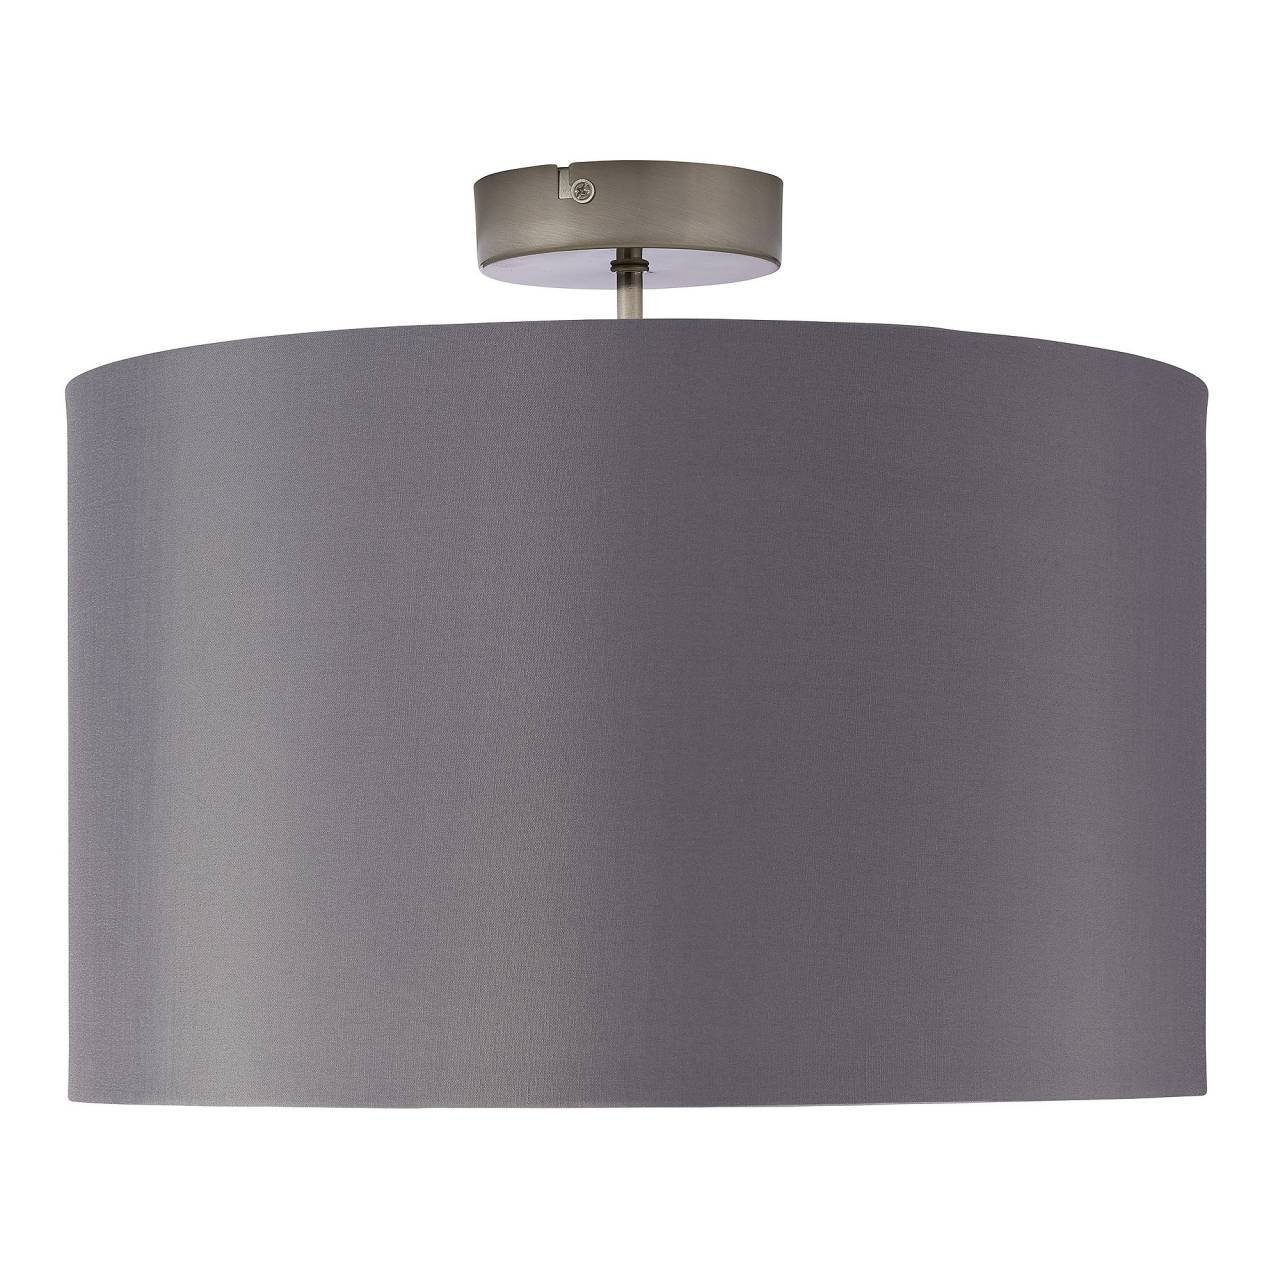 Brilliant Deckenleuchte Lampe Deckenleuchte E27, eisen/grau 40cm geeigne Clarie 60W, A60, Clarie, 1x